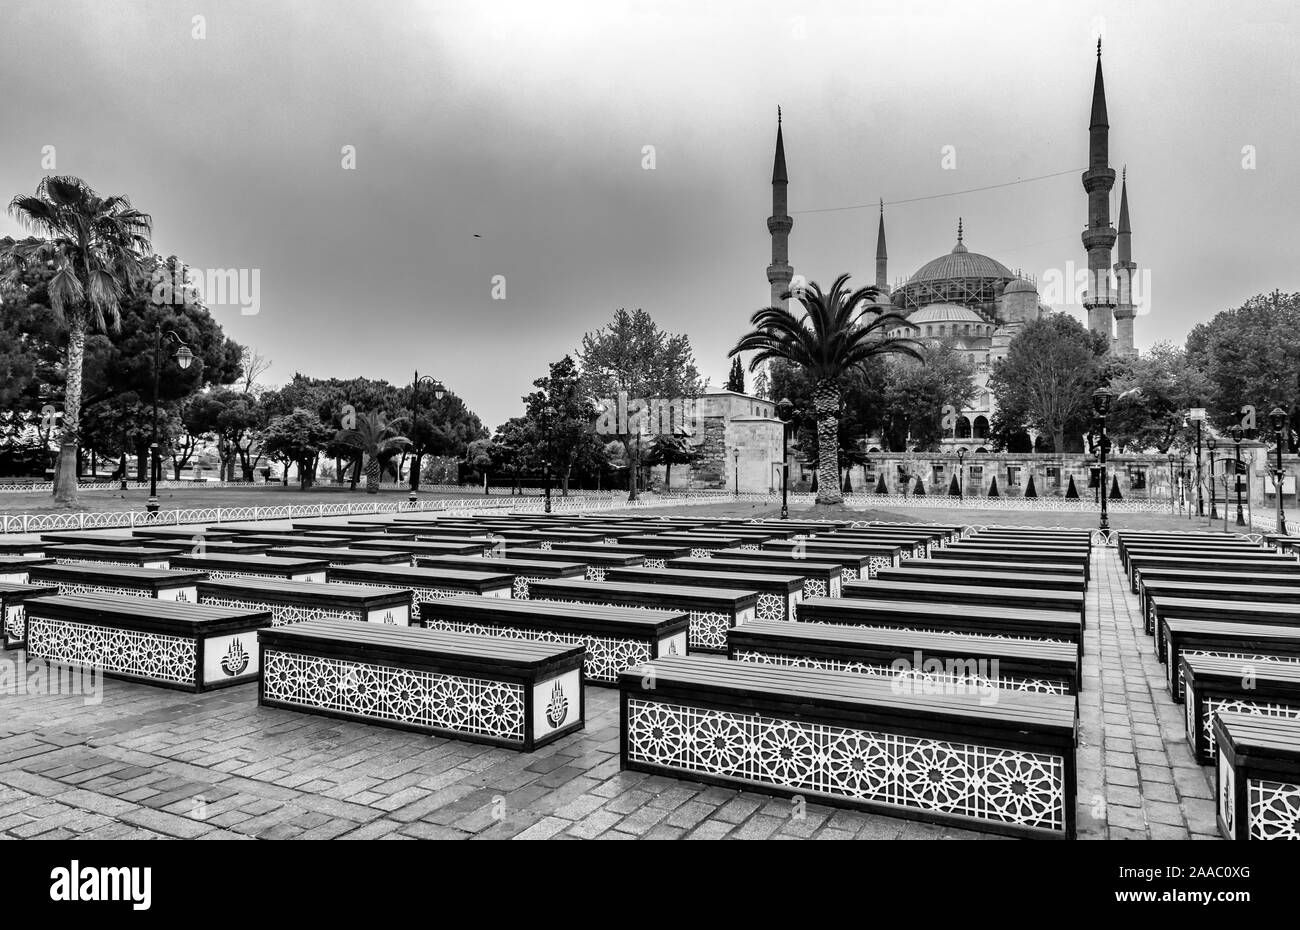 Mosquée Bleue Sultan Ahmed à Istanbul, Turquie - un des monuments les plus populaires de la ville. Fermer la vue au cours de la journée avec ciel nuageux Banque D'Images